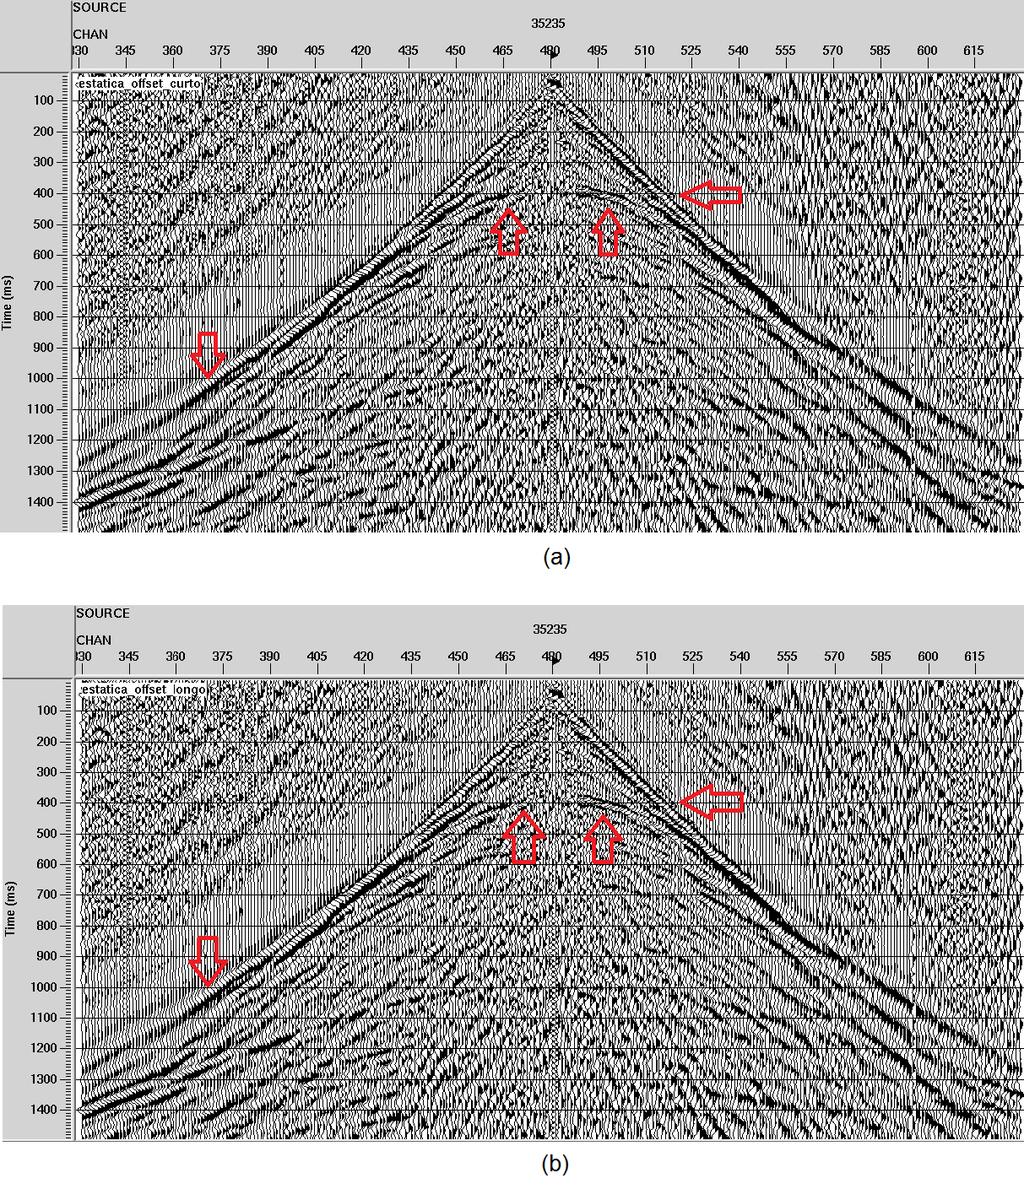 FONTES, SOUZA, MANENTI & PORSANI 5 Figura 5: (a) Dado com correção estática utilizando os picks nos offsets curtos